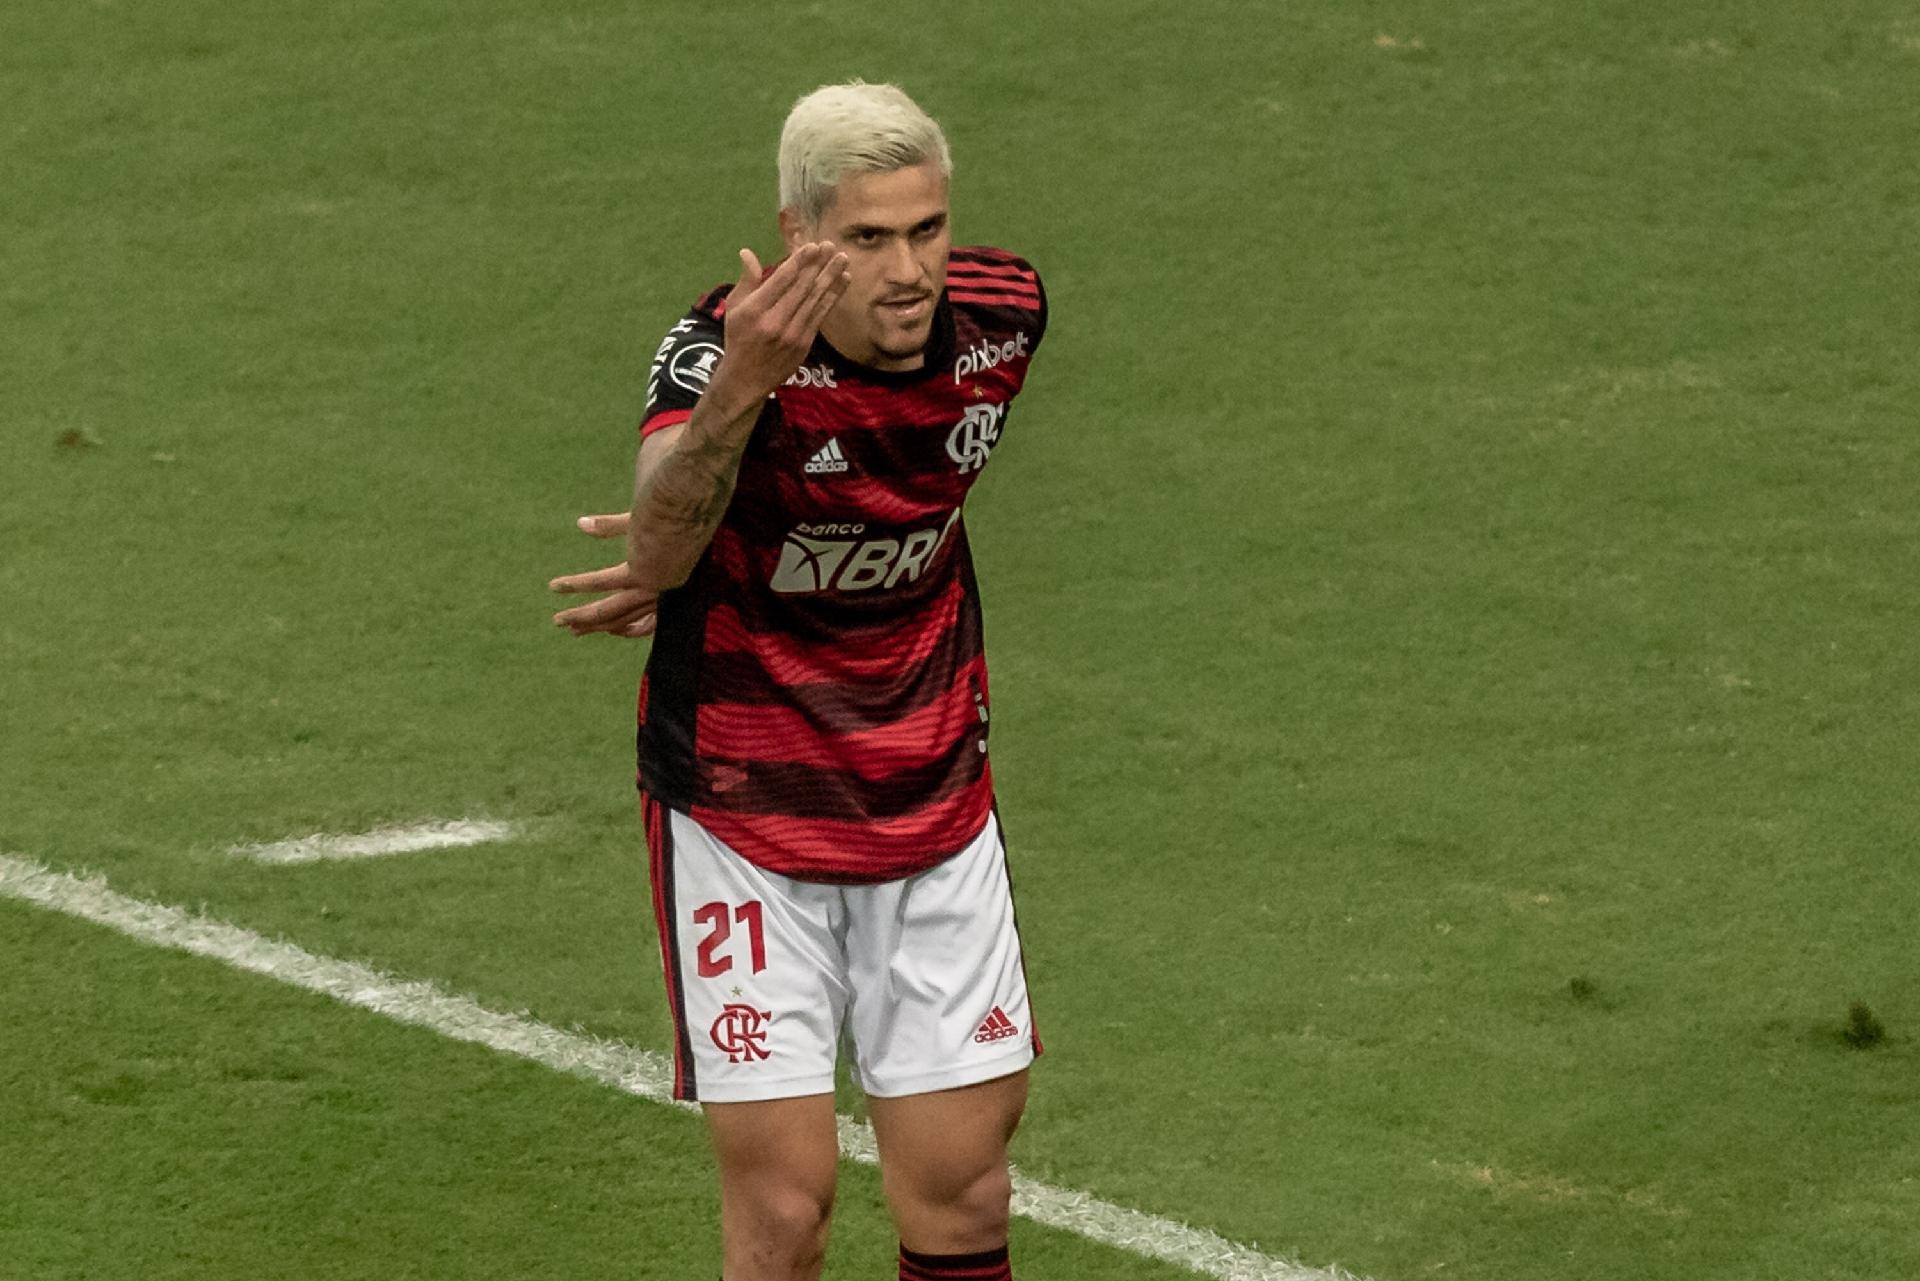 Internet Explorer do Futebol on X: Boa sorte ao Flamengo no Mundial   / X